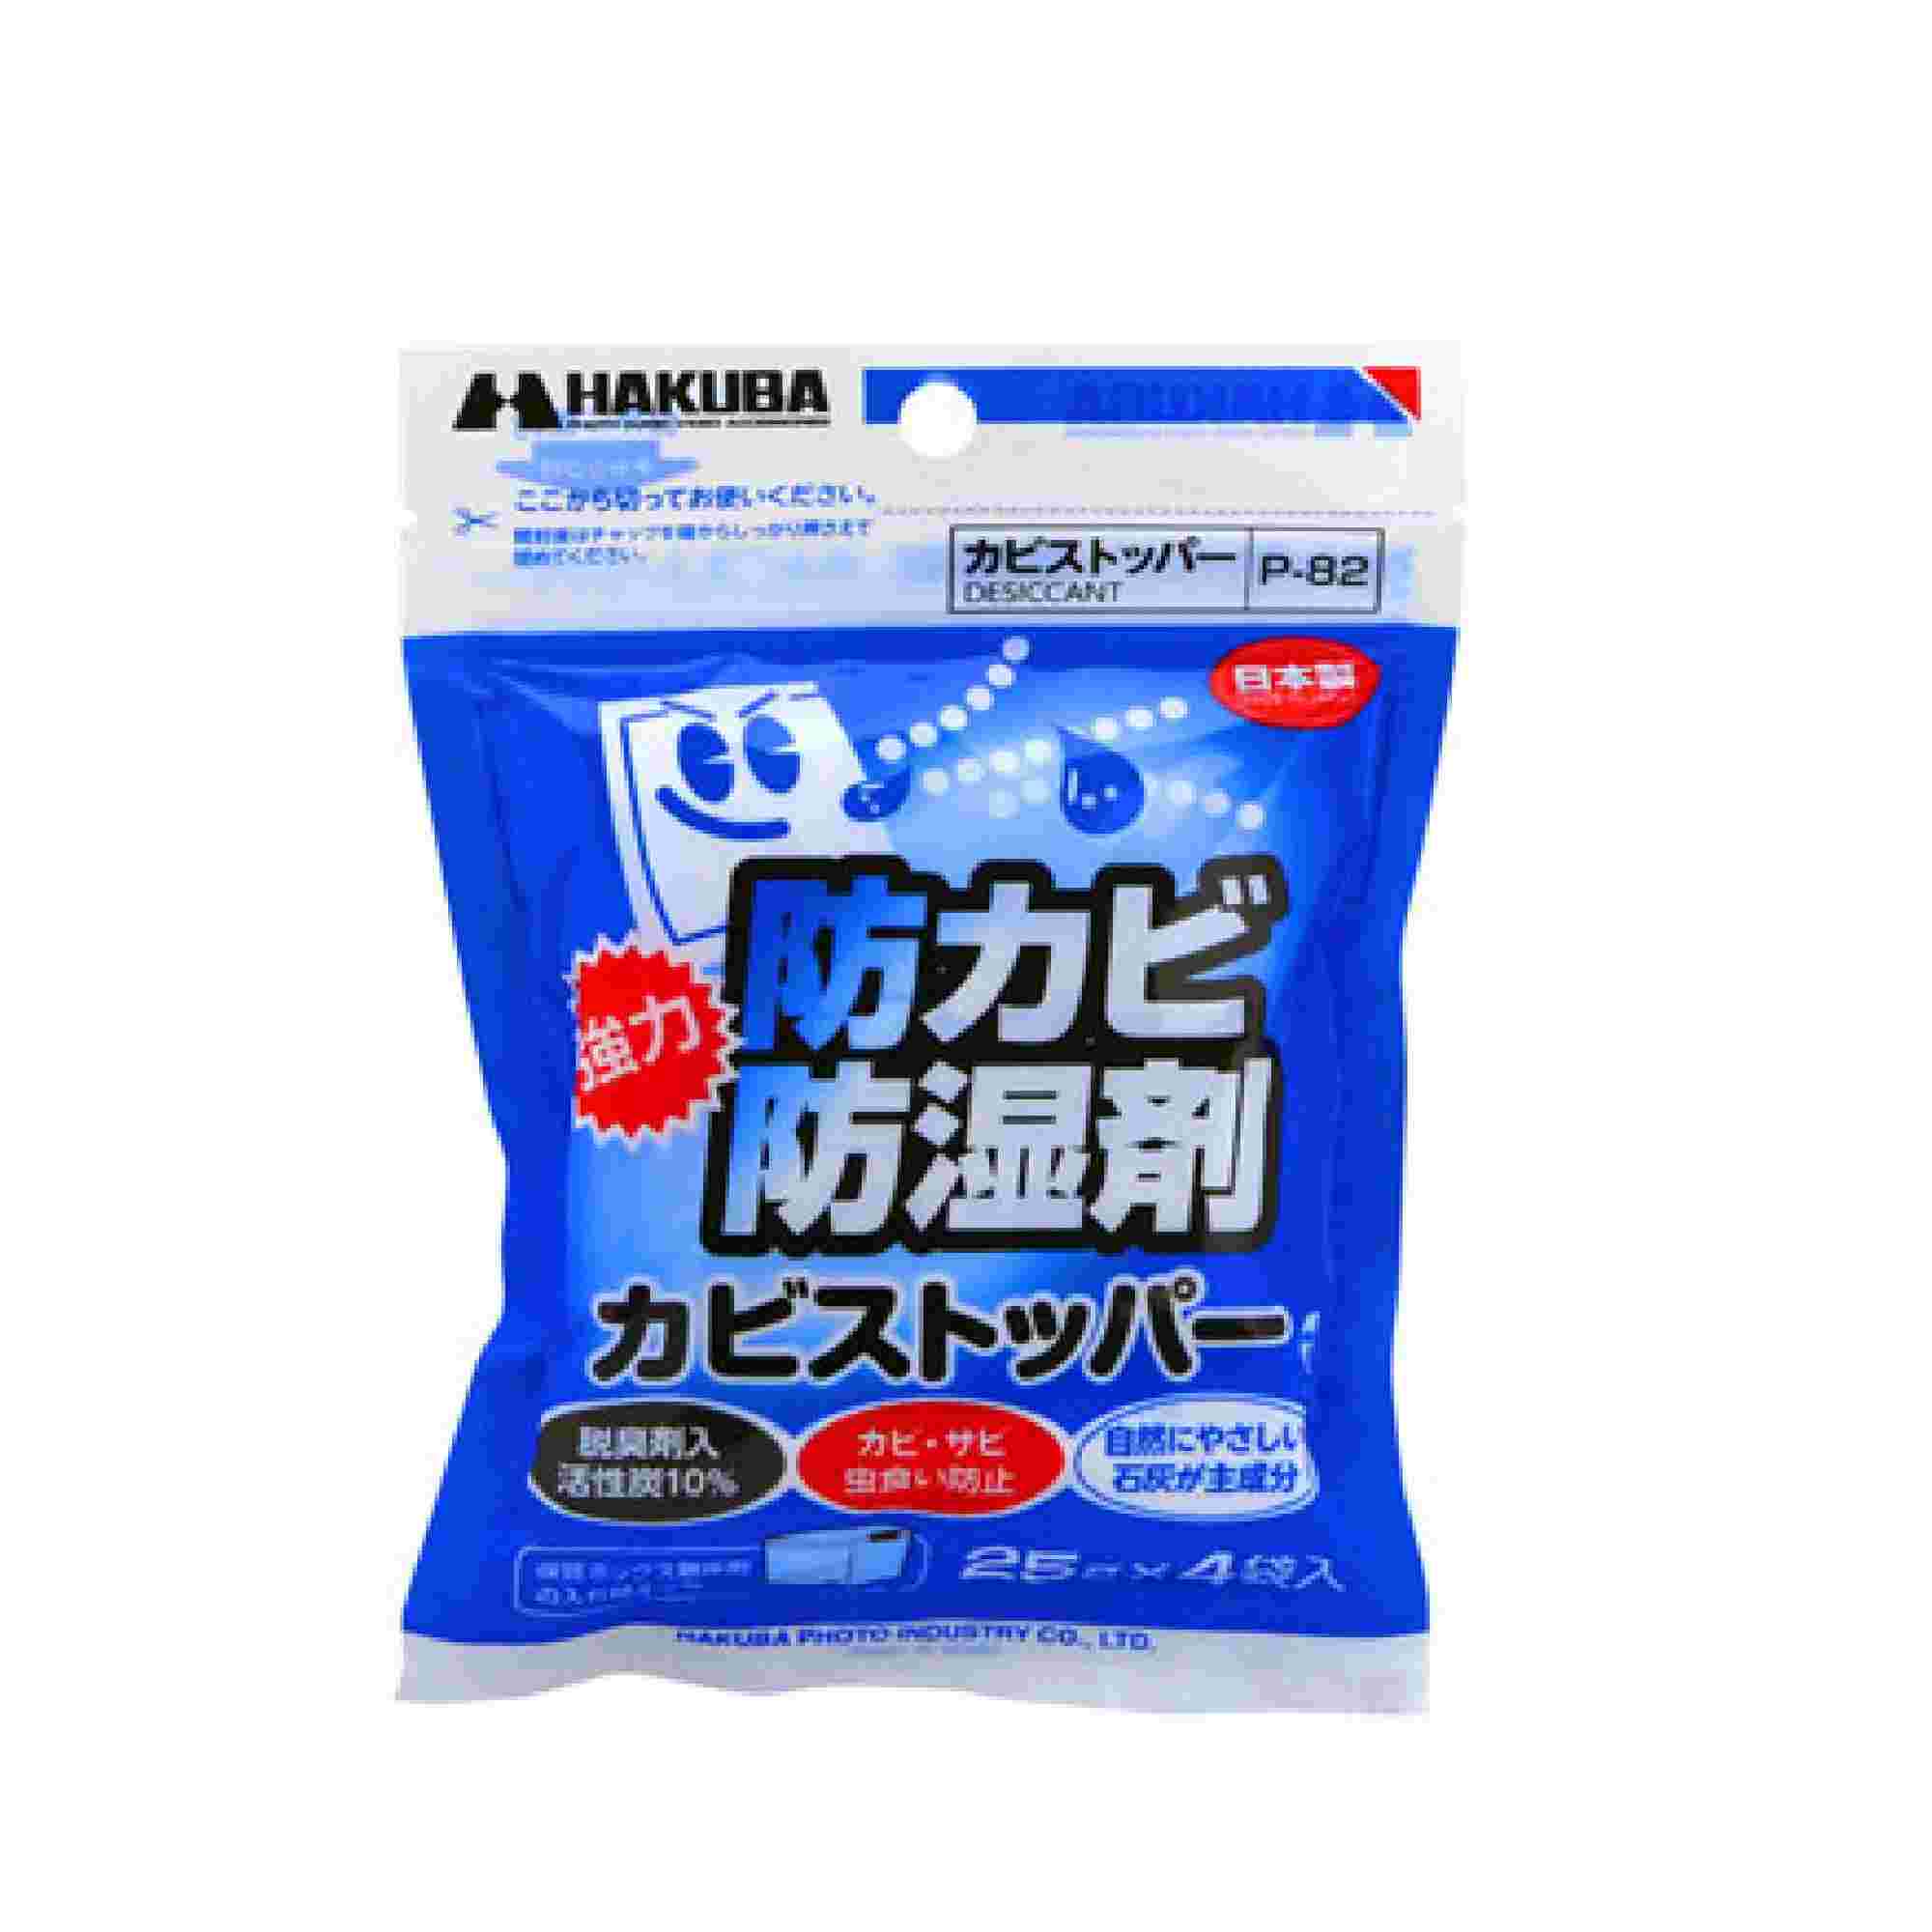 Hakuba 強力防潮防臭劑4片裝 (25G) 清潔用品